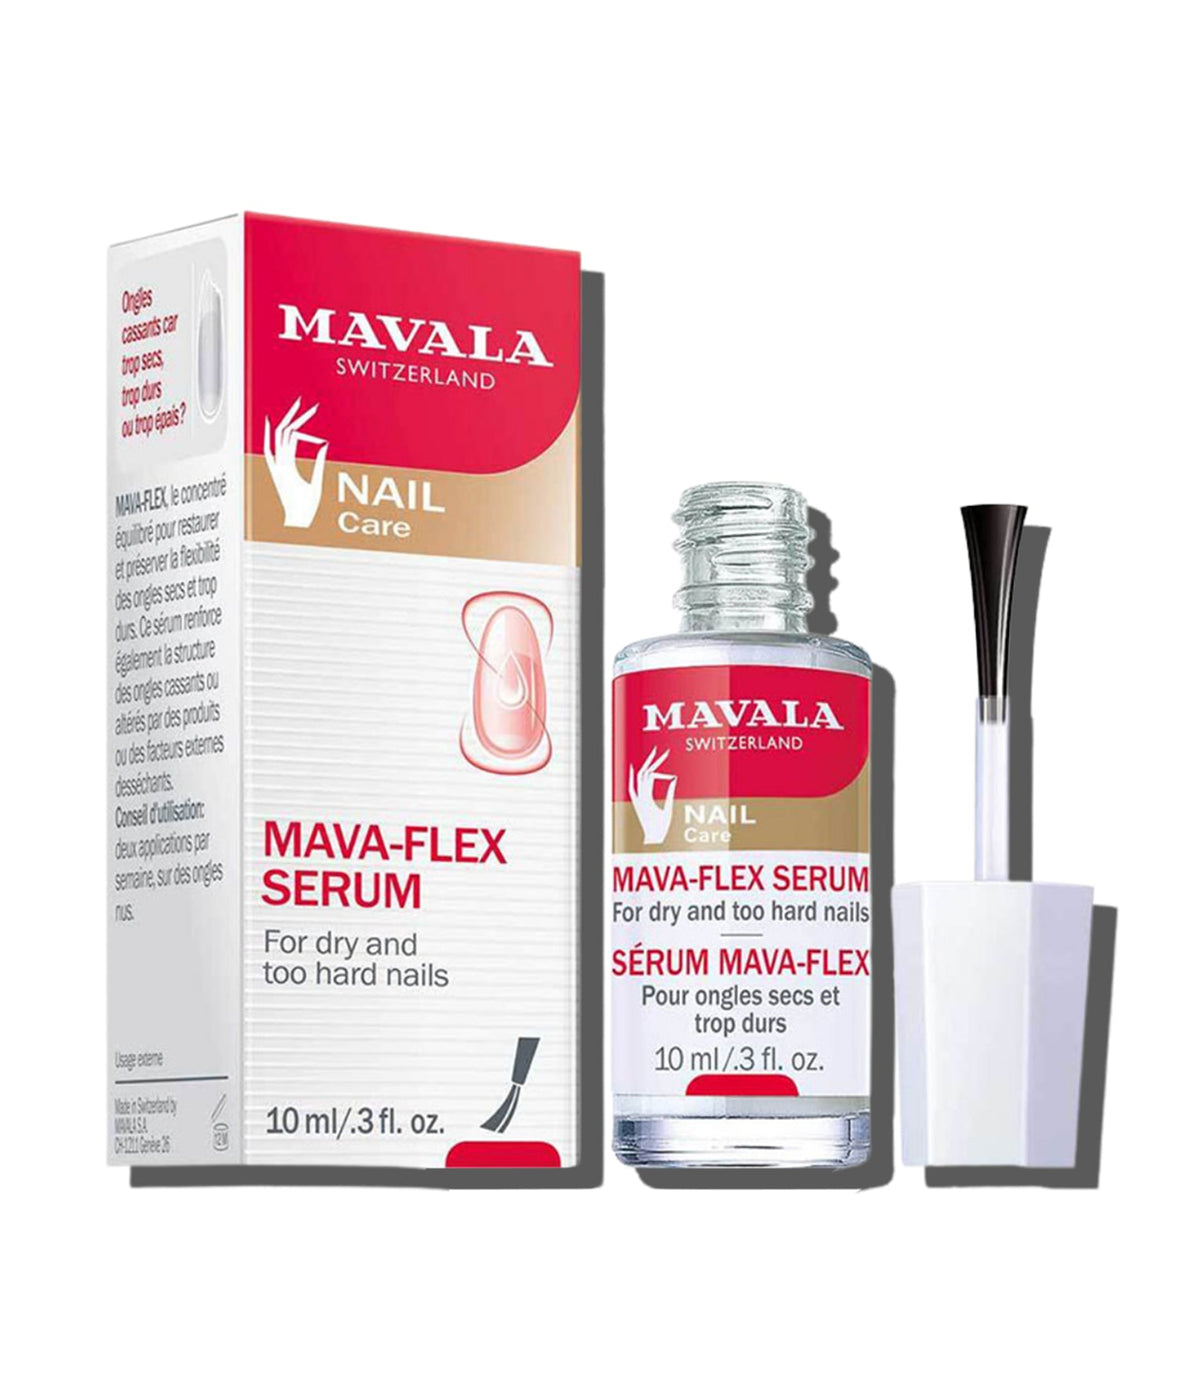 Mava-Flex Serum 10ml